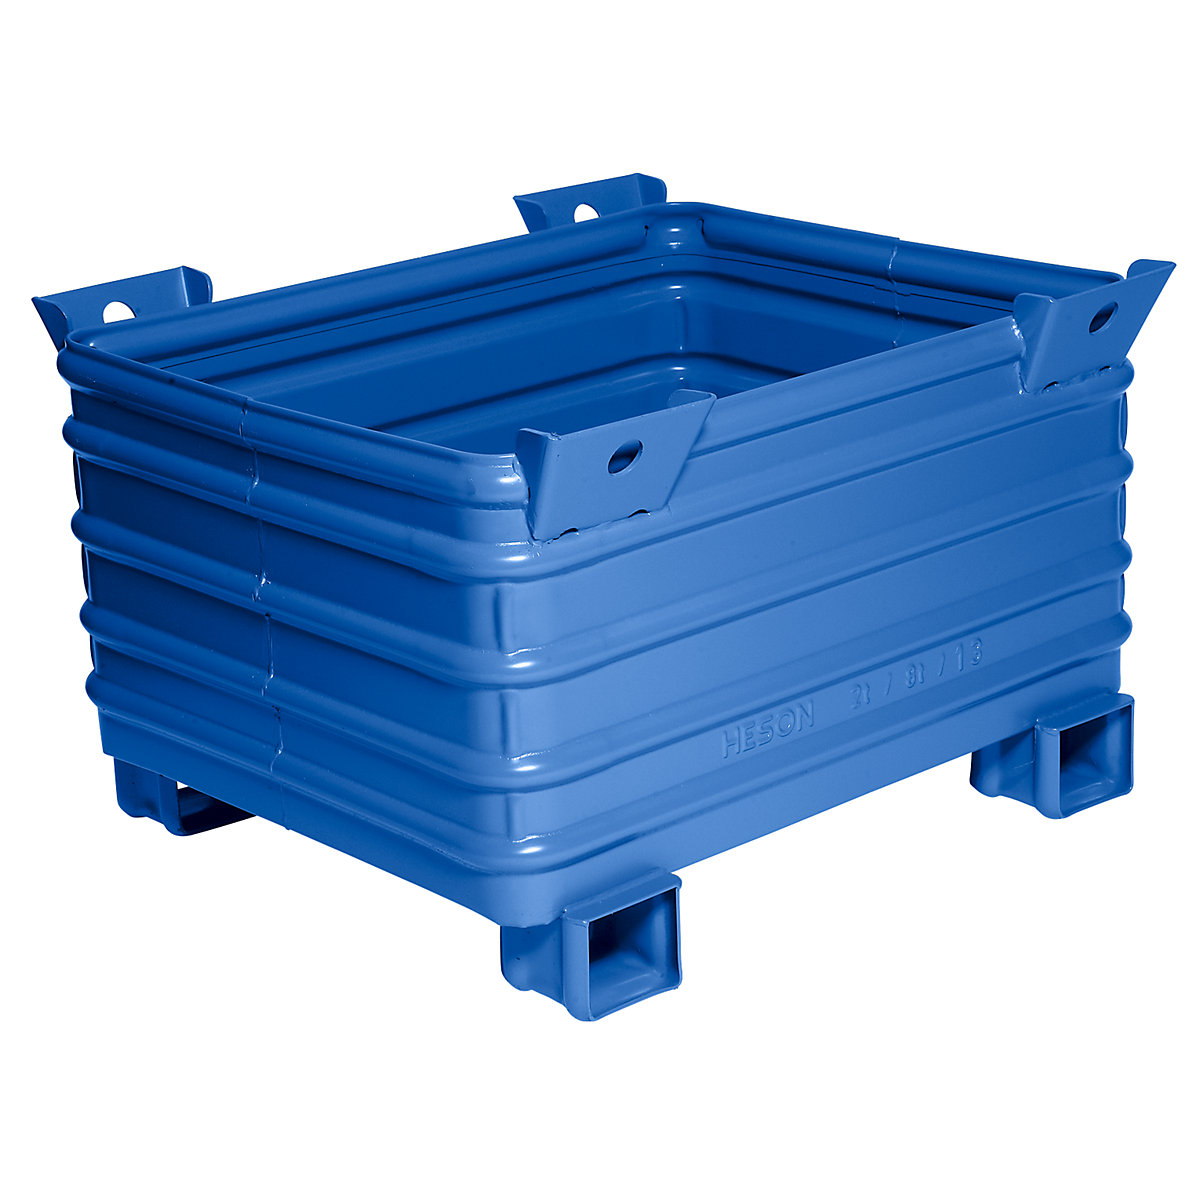 Caisse-palette pour charges lourdes – Heson, l x L 800 x 1000 mm, pieds en U, laqué bleu, 10 pièces et +-4